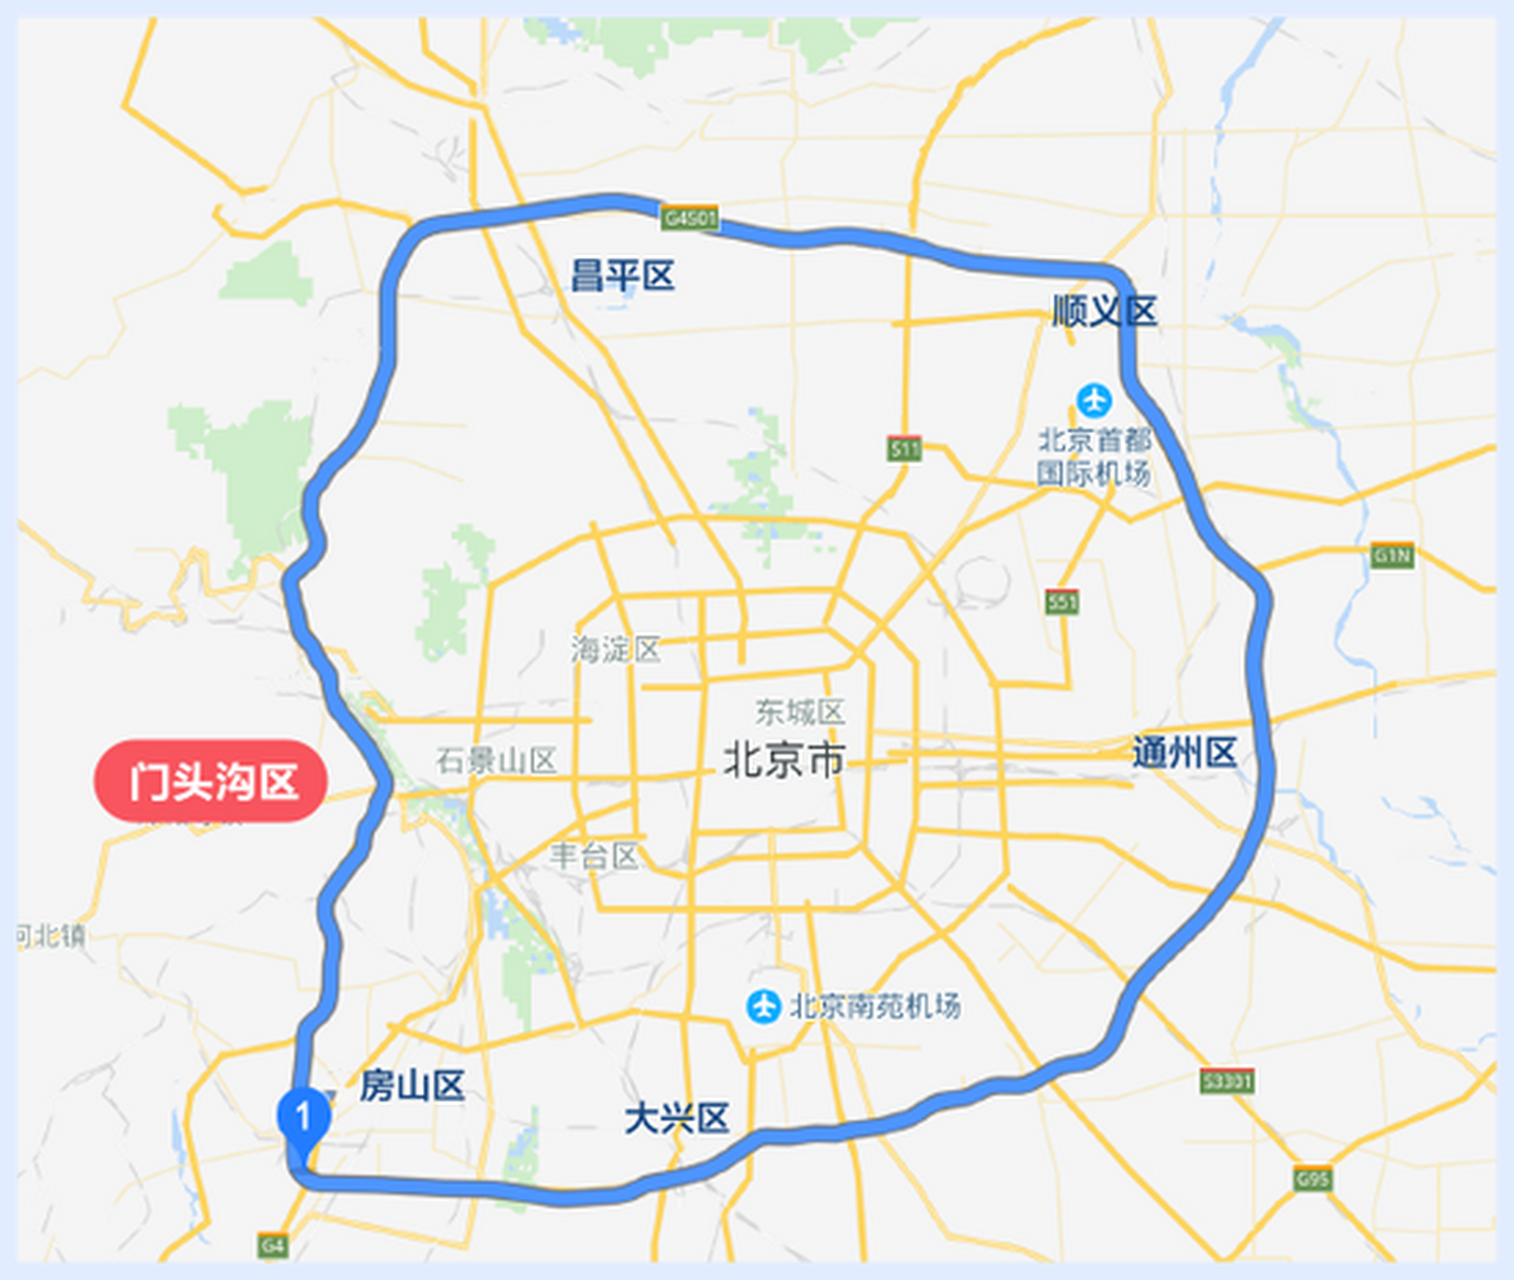 北京各环线周长,面积 一环线 周长 16.